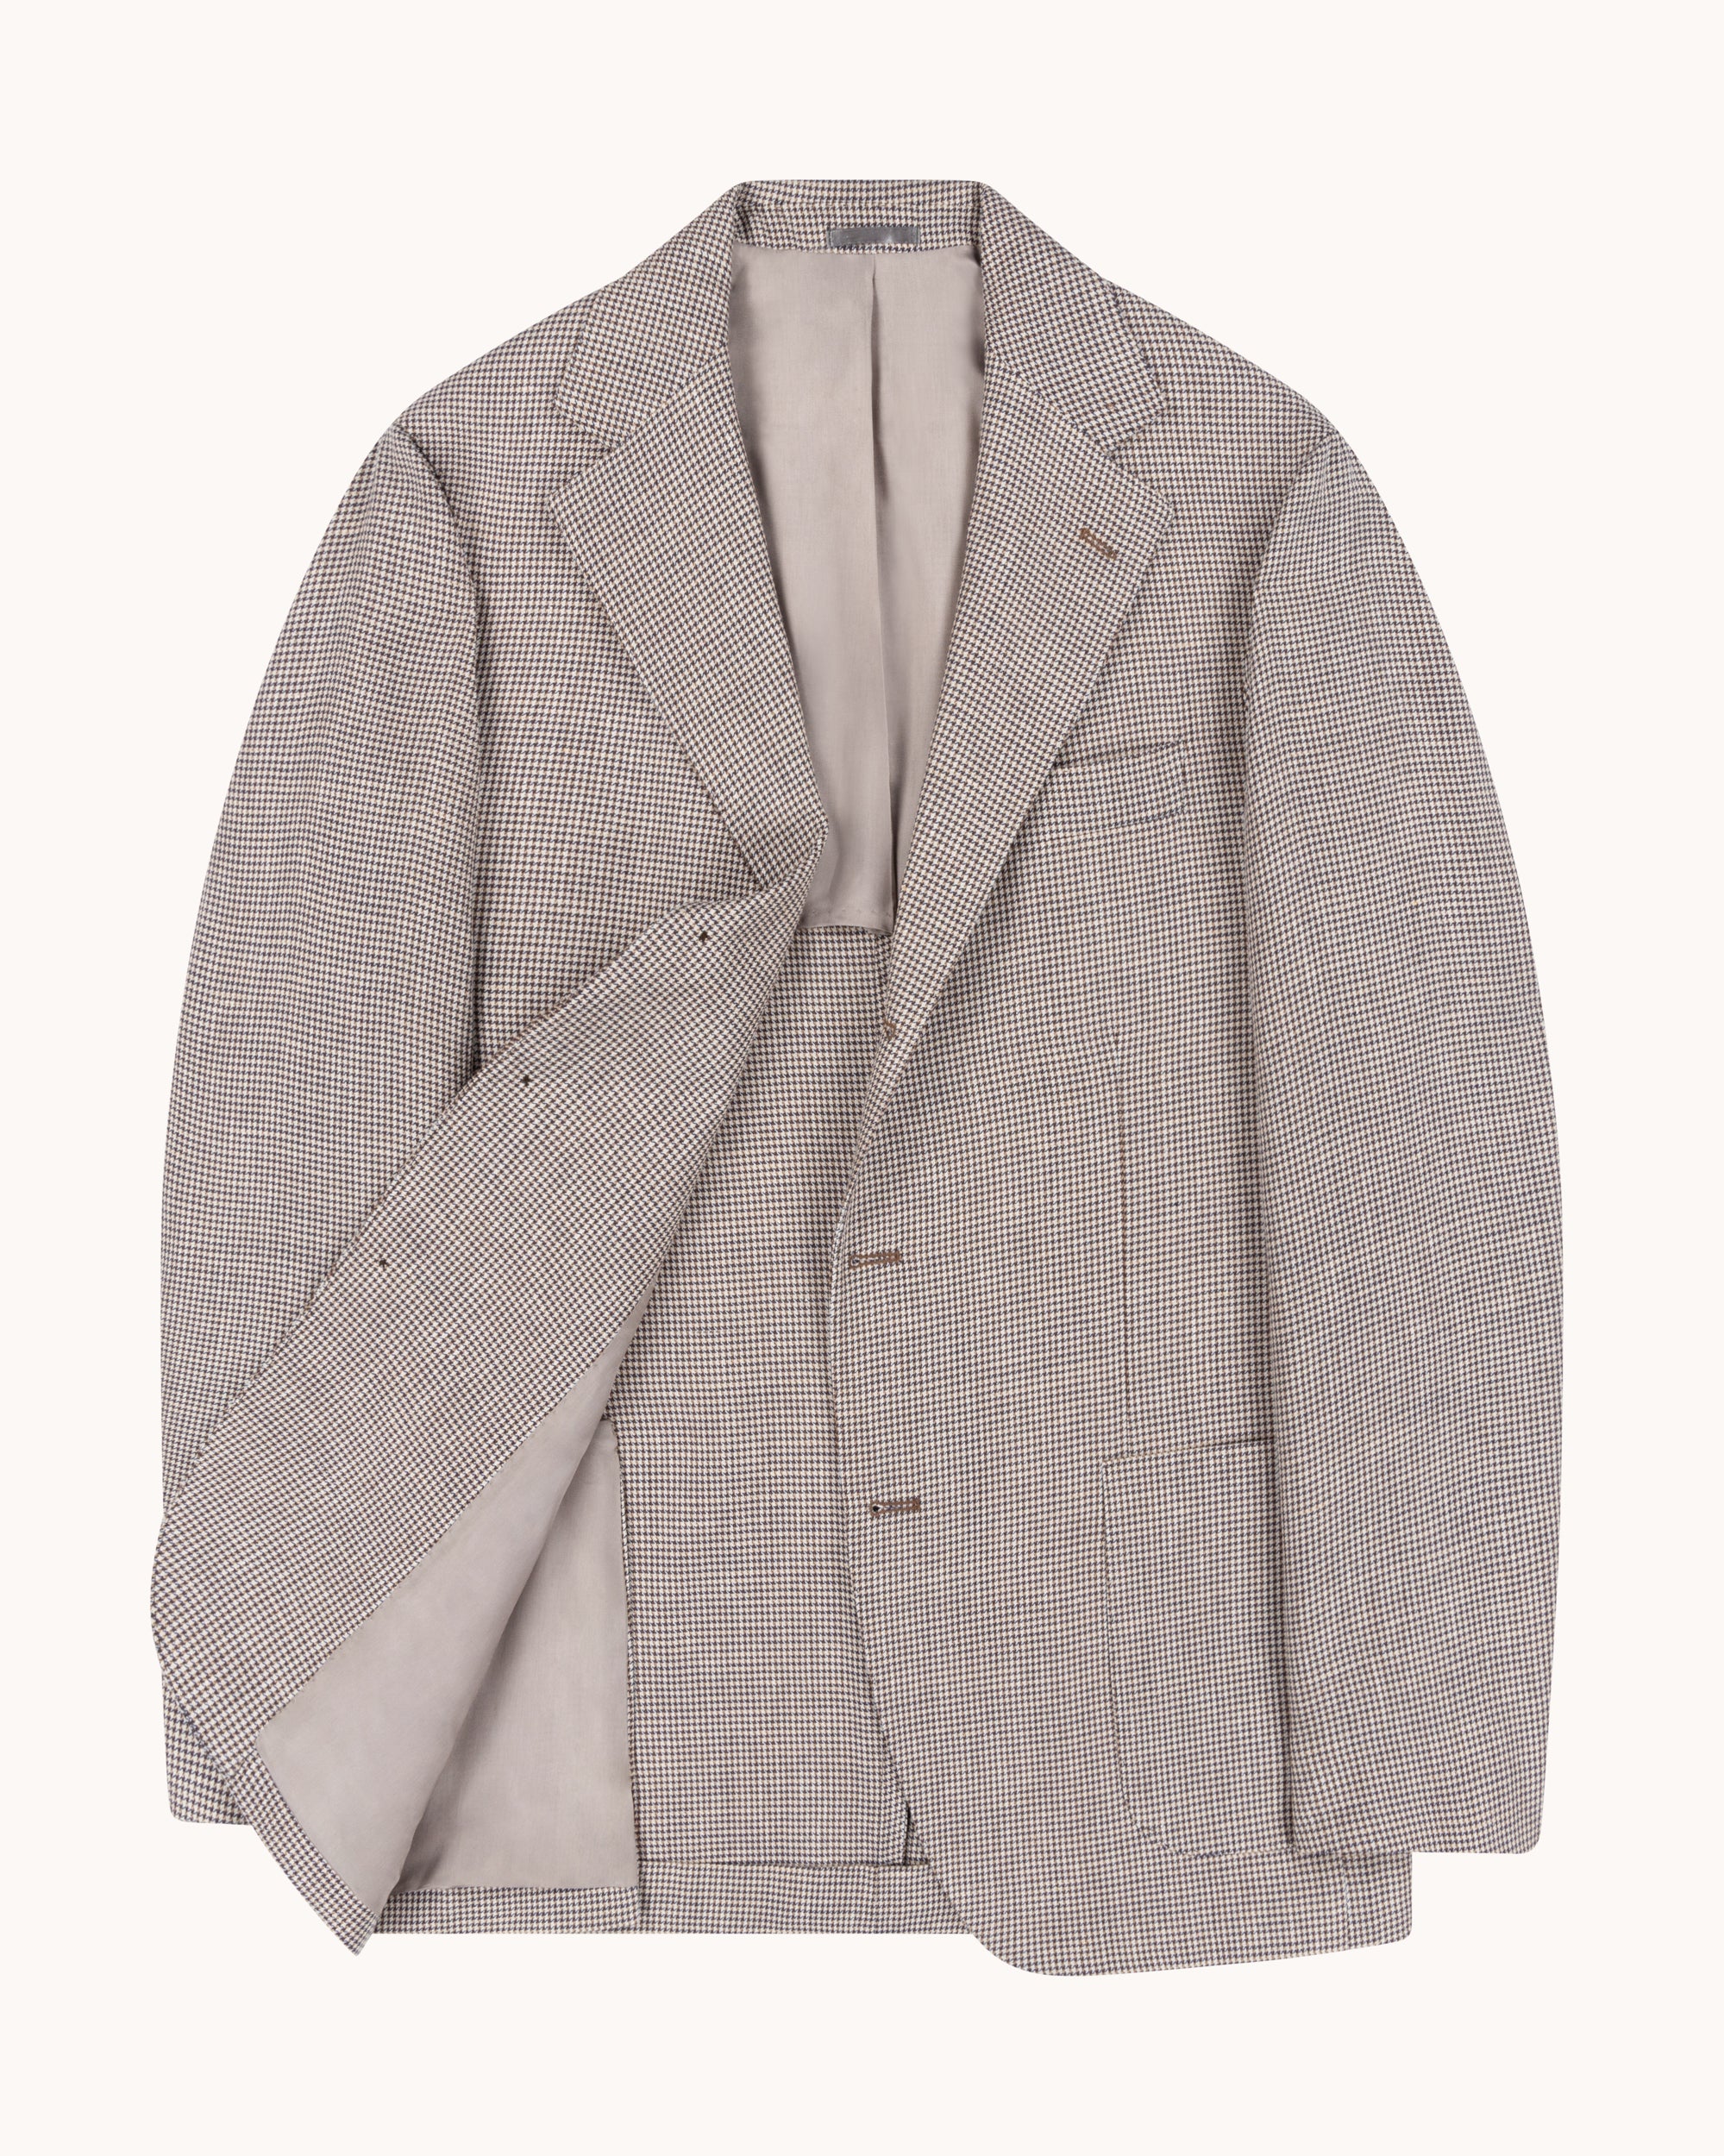 Sport Jacket - Beige Brown Houndstooth Wool Linen